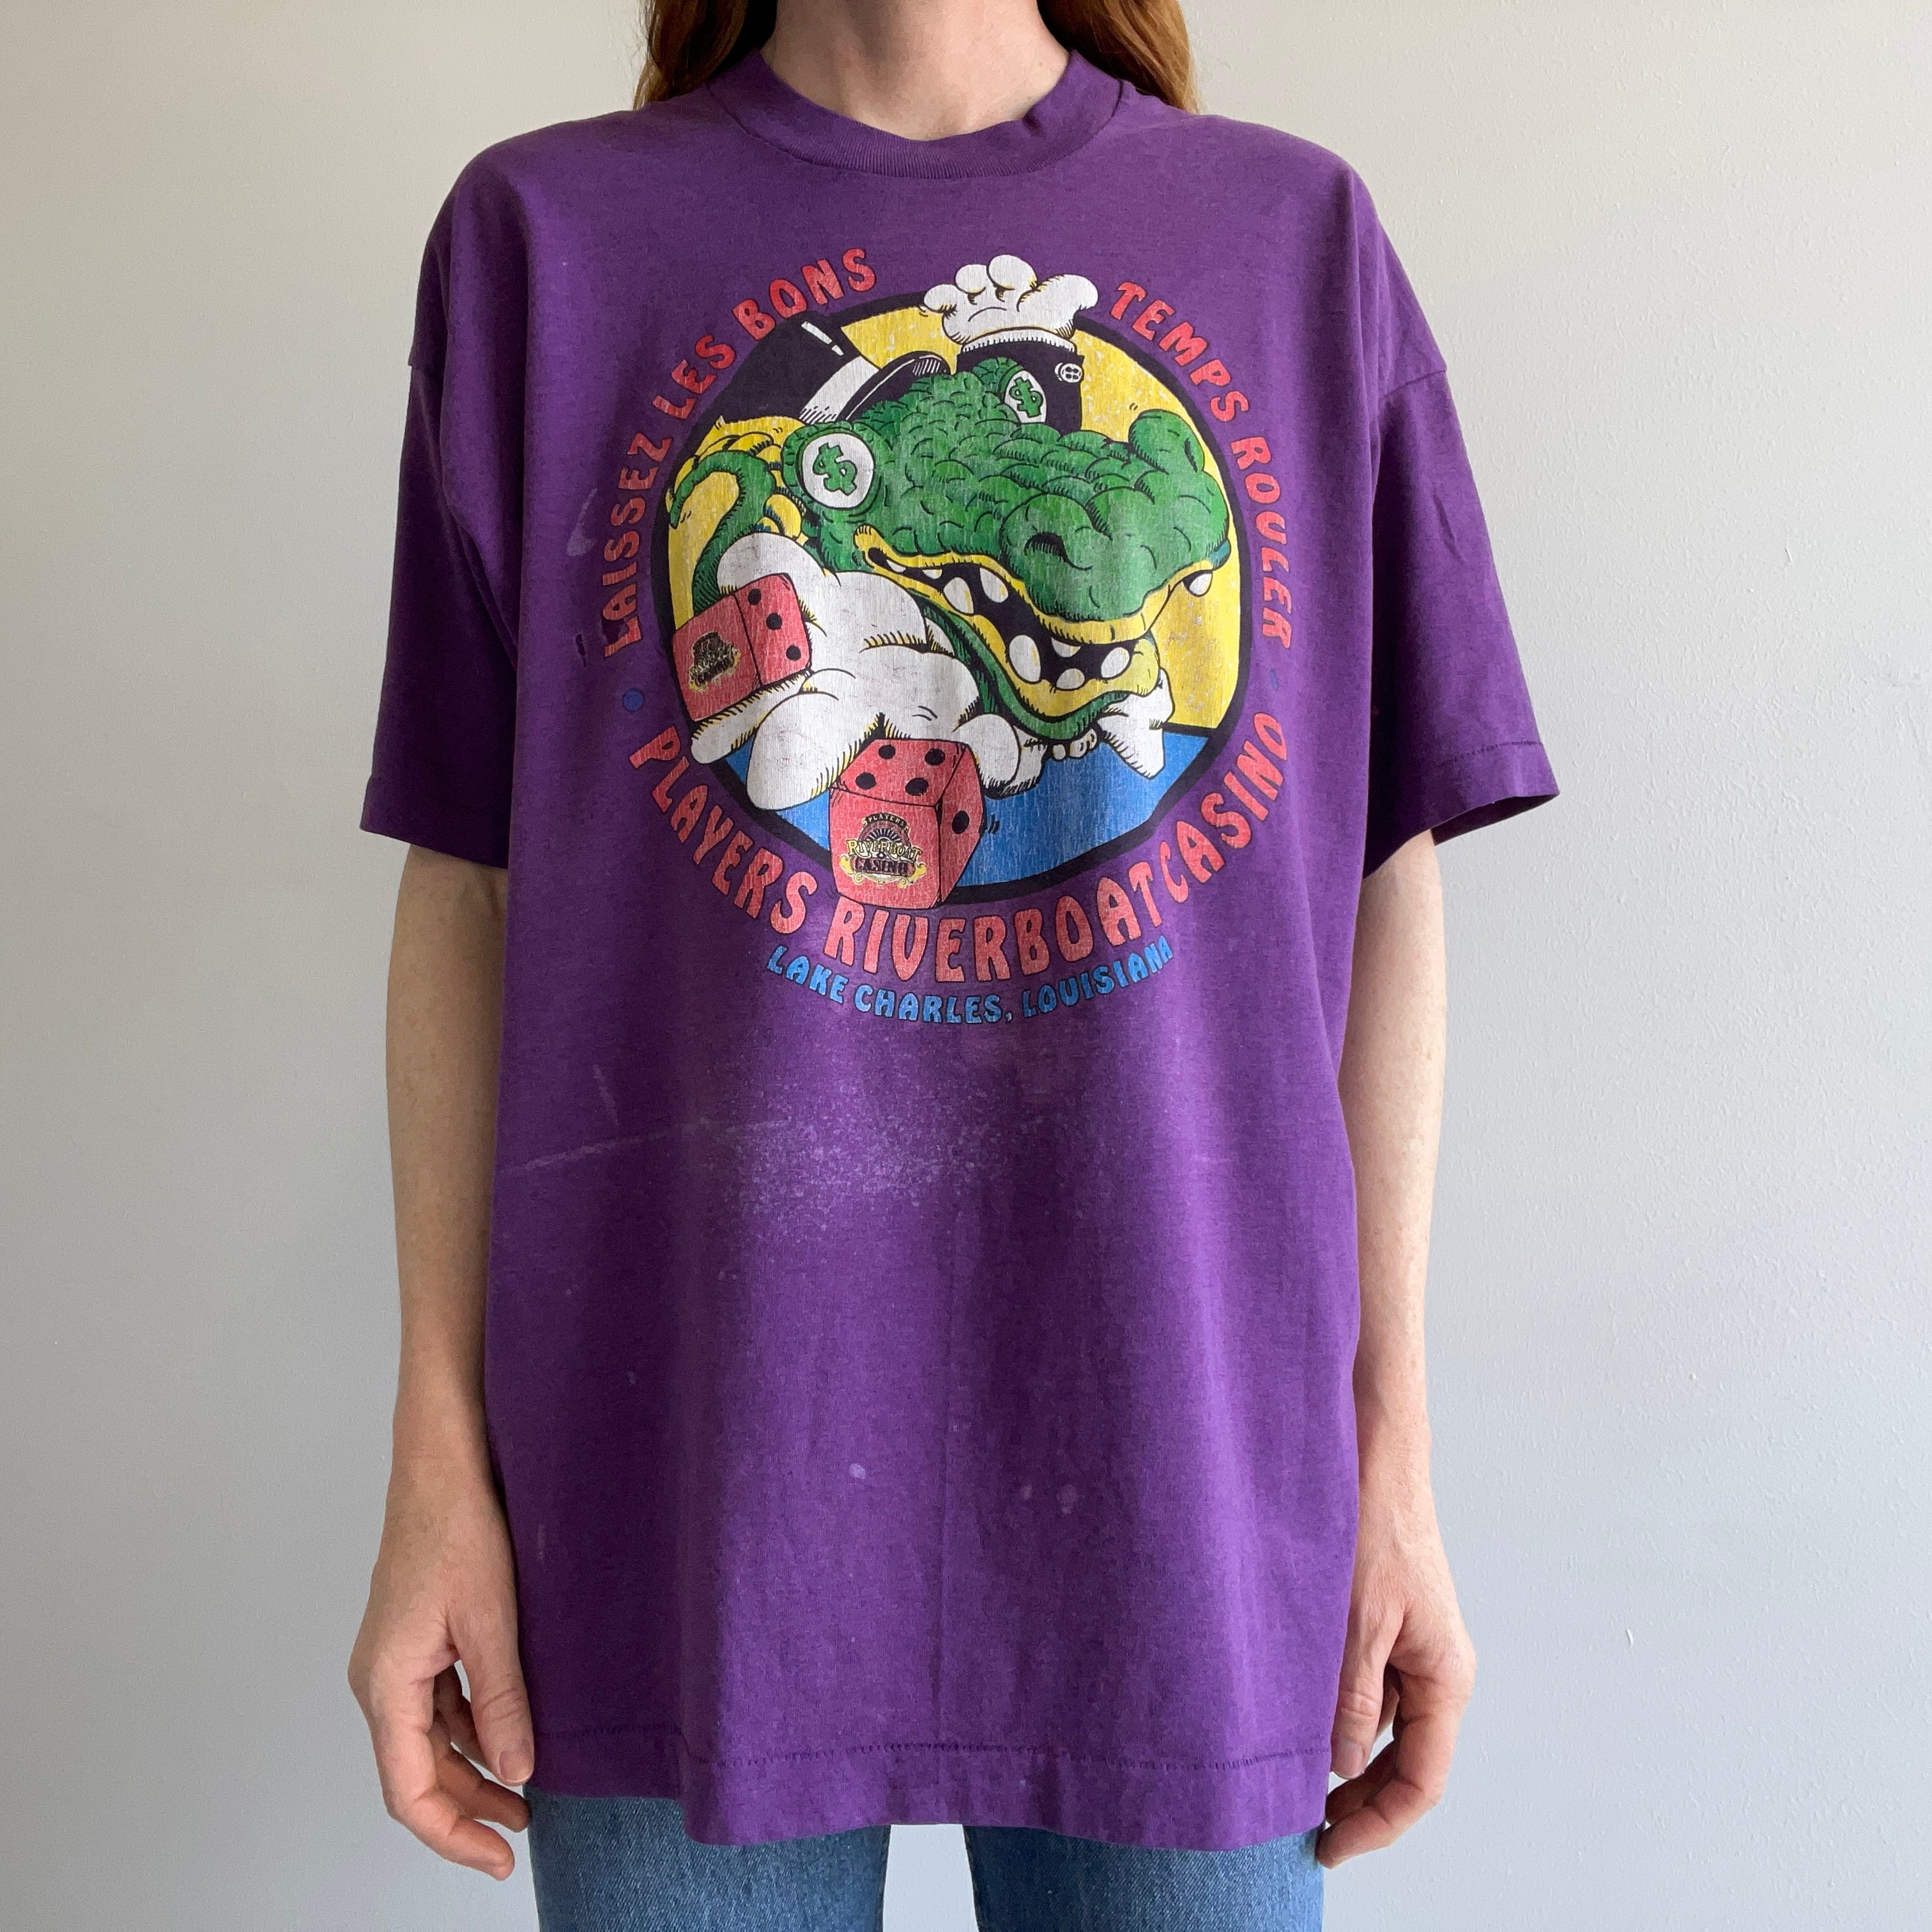 1980s Laissez Les Bons Temps Rouler T-Shirt - WOW